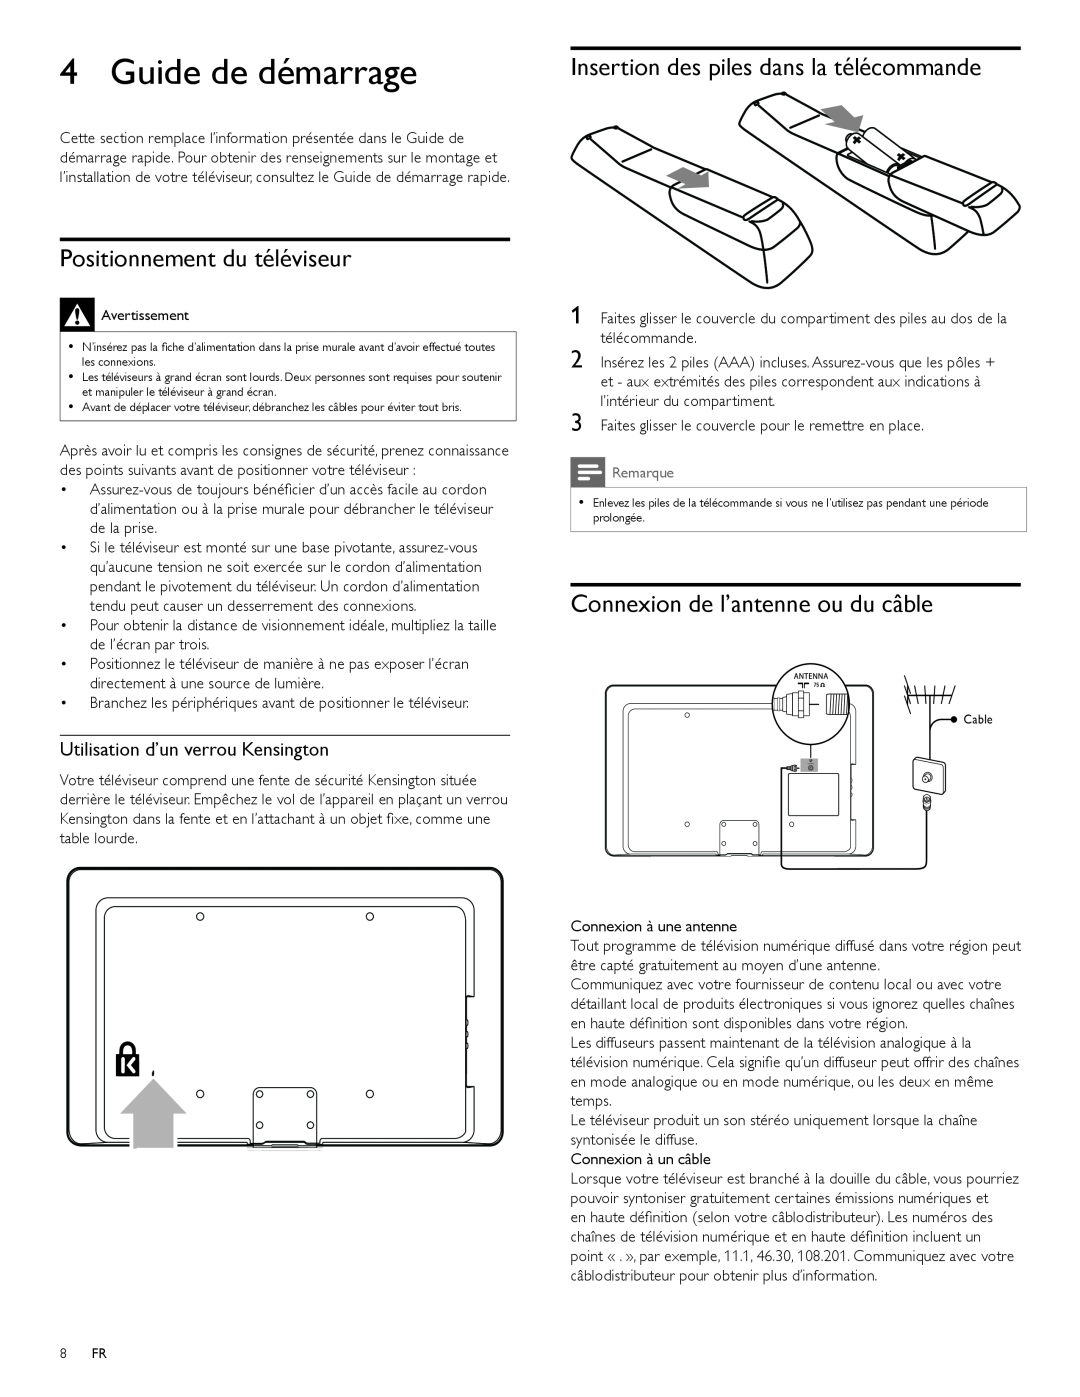 Magnavox 47MF439B user manual Guide de démarrage, Insertion des piles dans la télécommande, Positionnement du téléviseur 